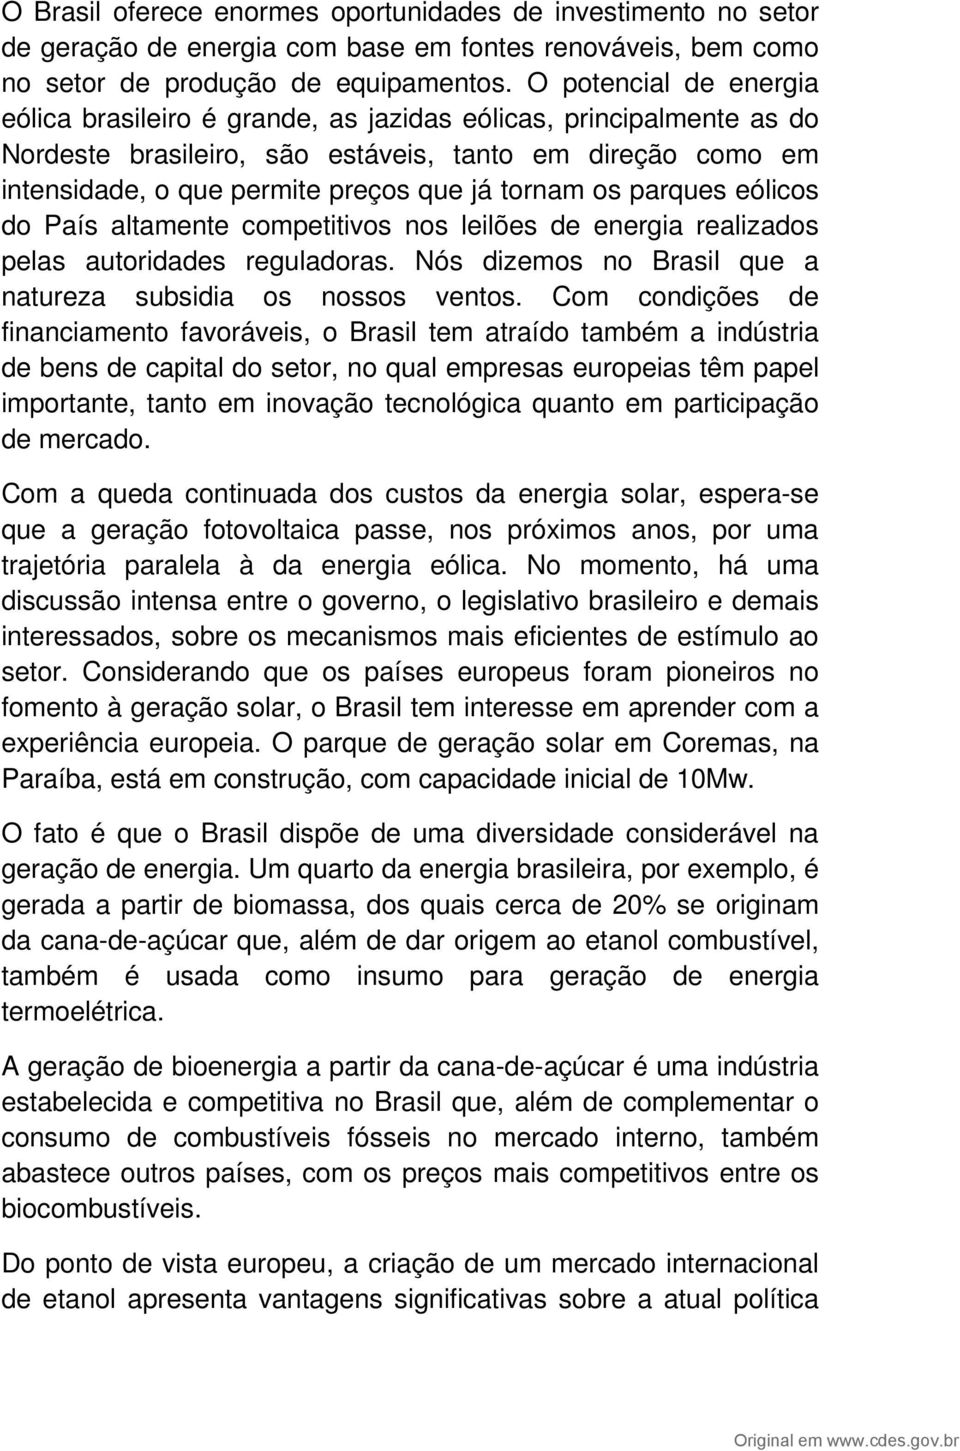 os parques eólicos do País altamente competitivos nos leilões de energia realizados pelas autoridades reguladoras. Nós dizemos no Brasil que a natureza subsidia os nossos ventos.